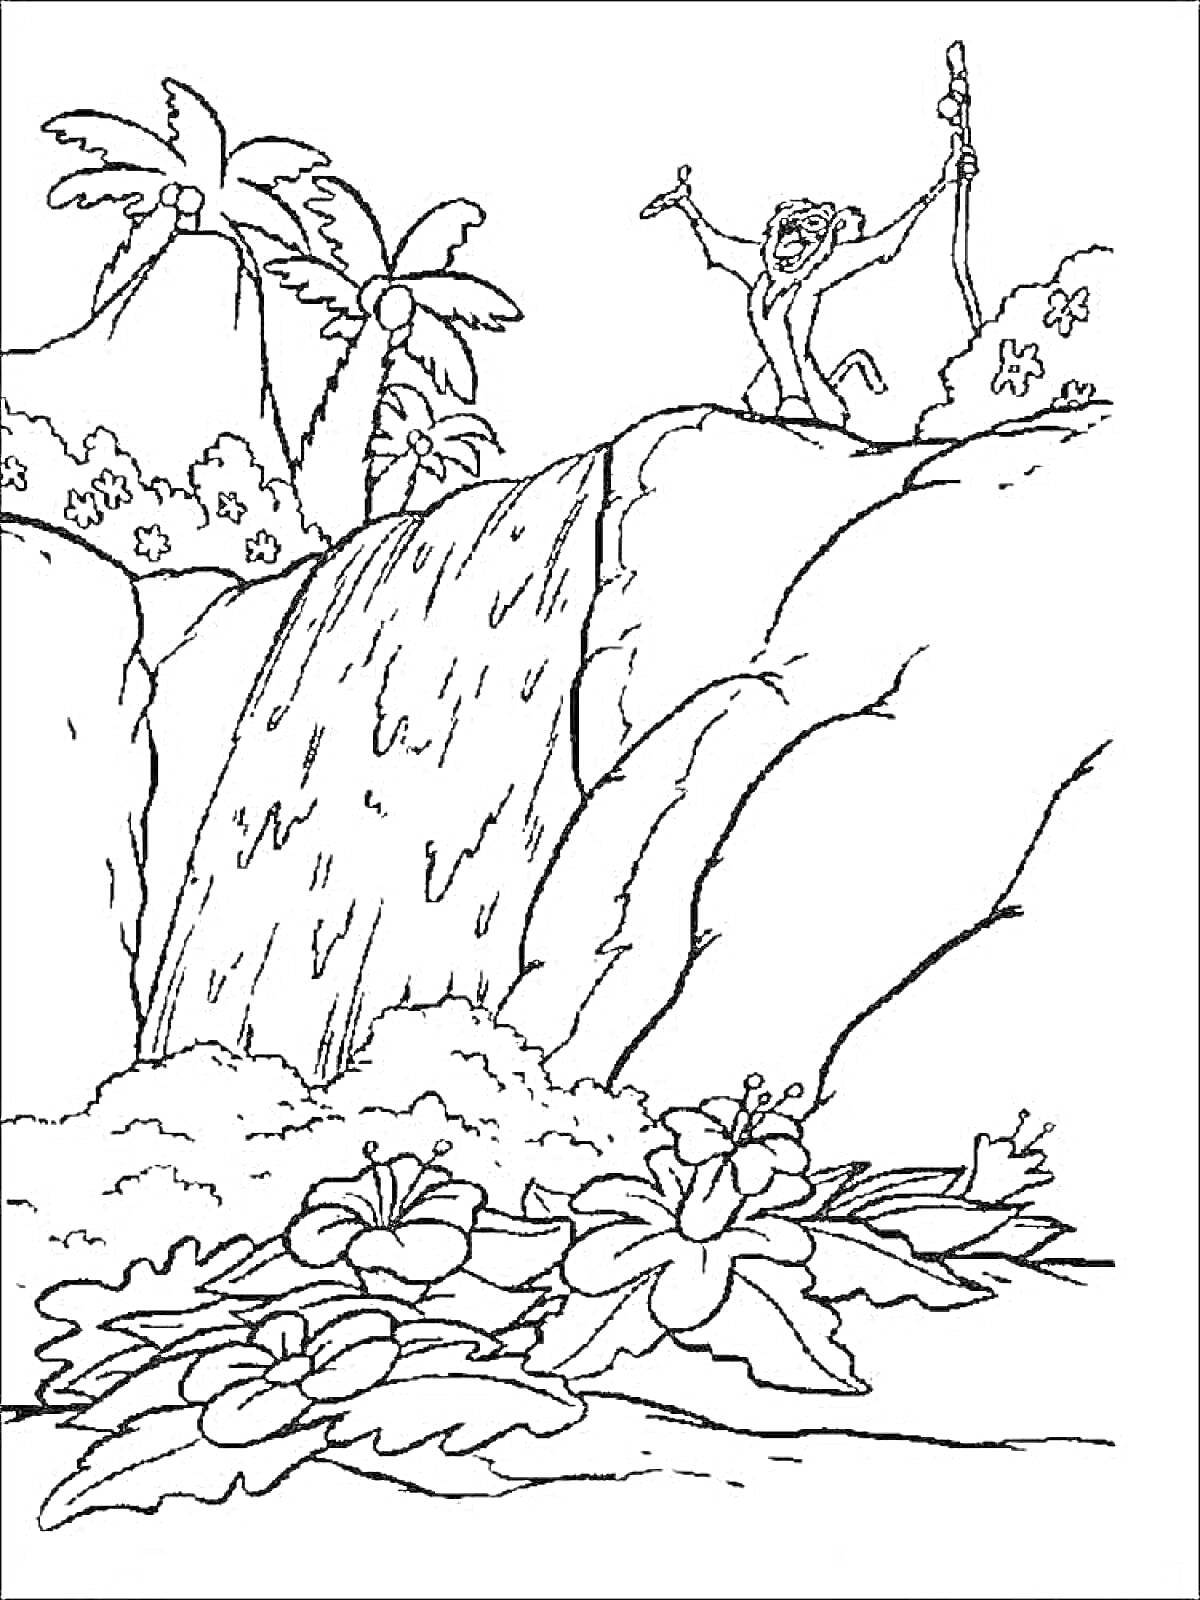 Раскраска Водопад в тропическом лесу с обезьяной и цветами на переднем плане